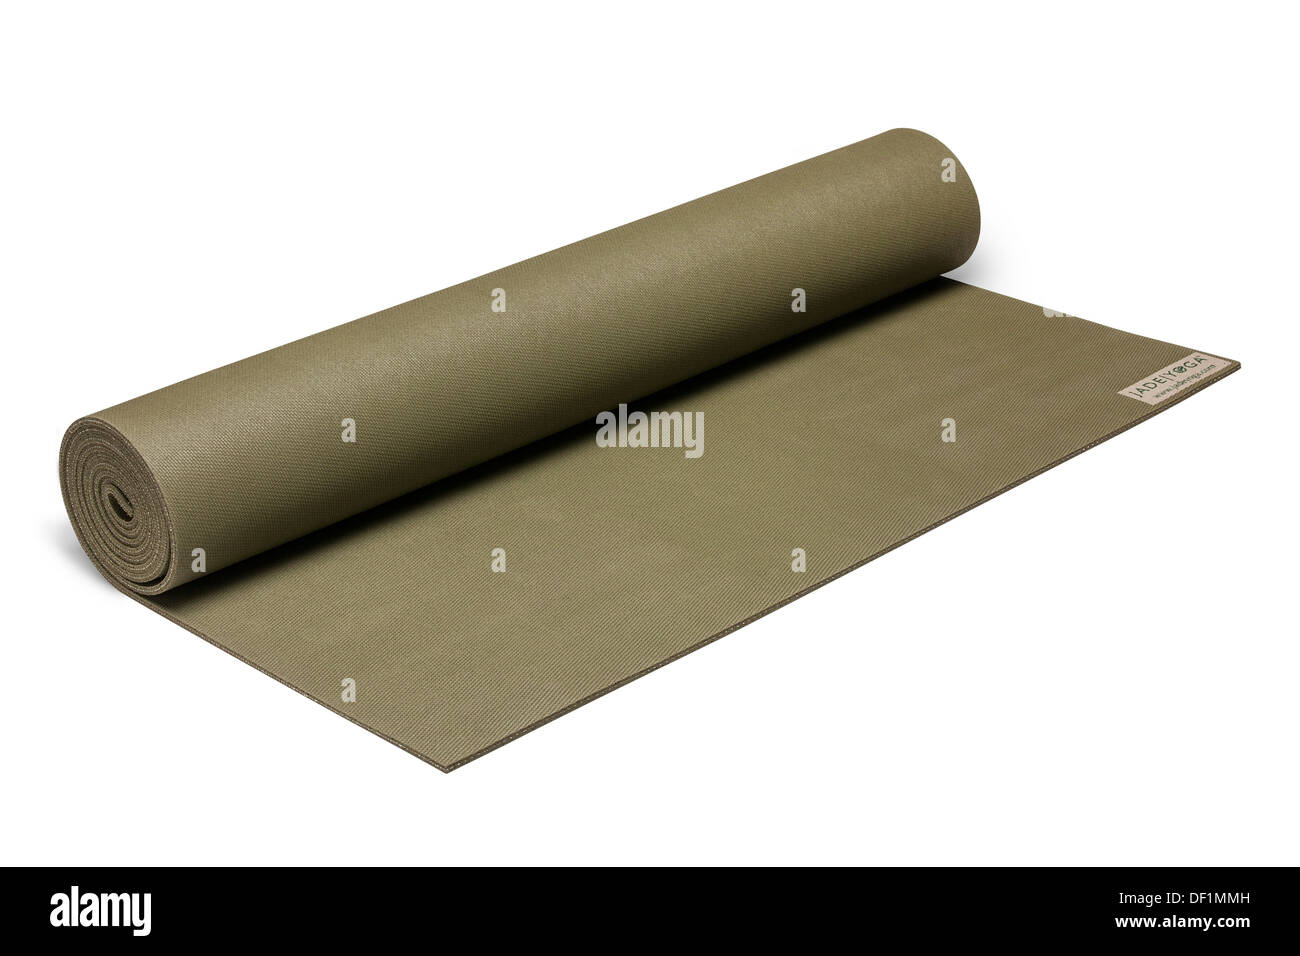 coloured yoga exercise roll mat isolated on white background product image. Stock Photo